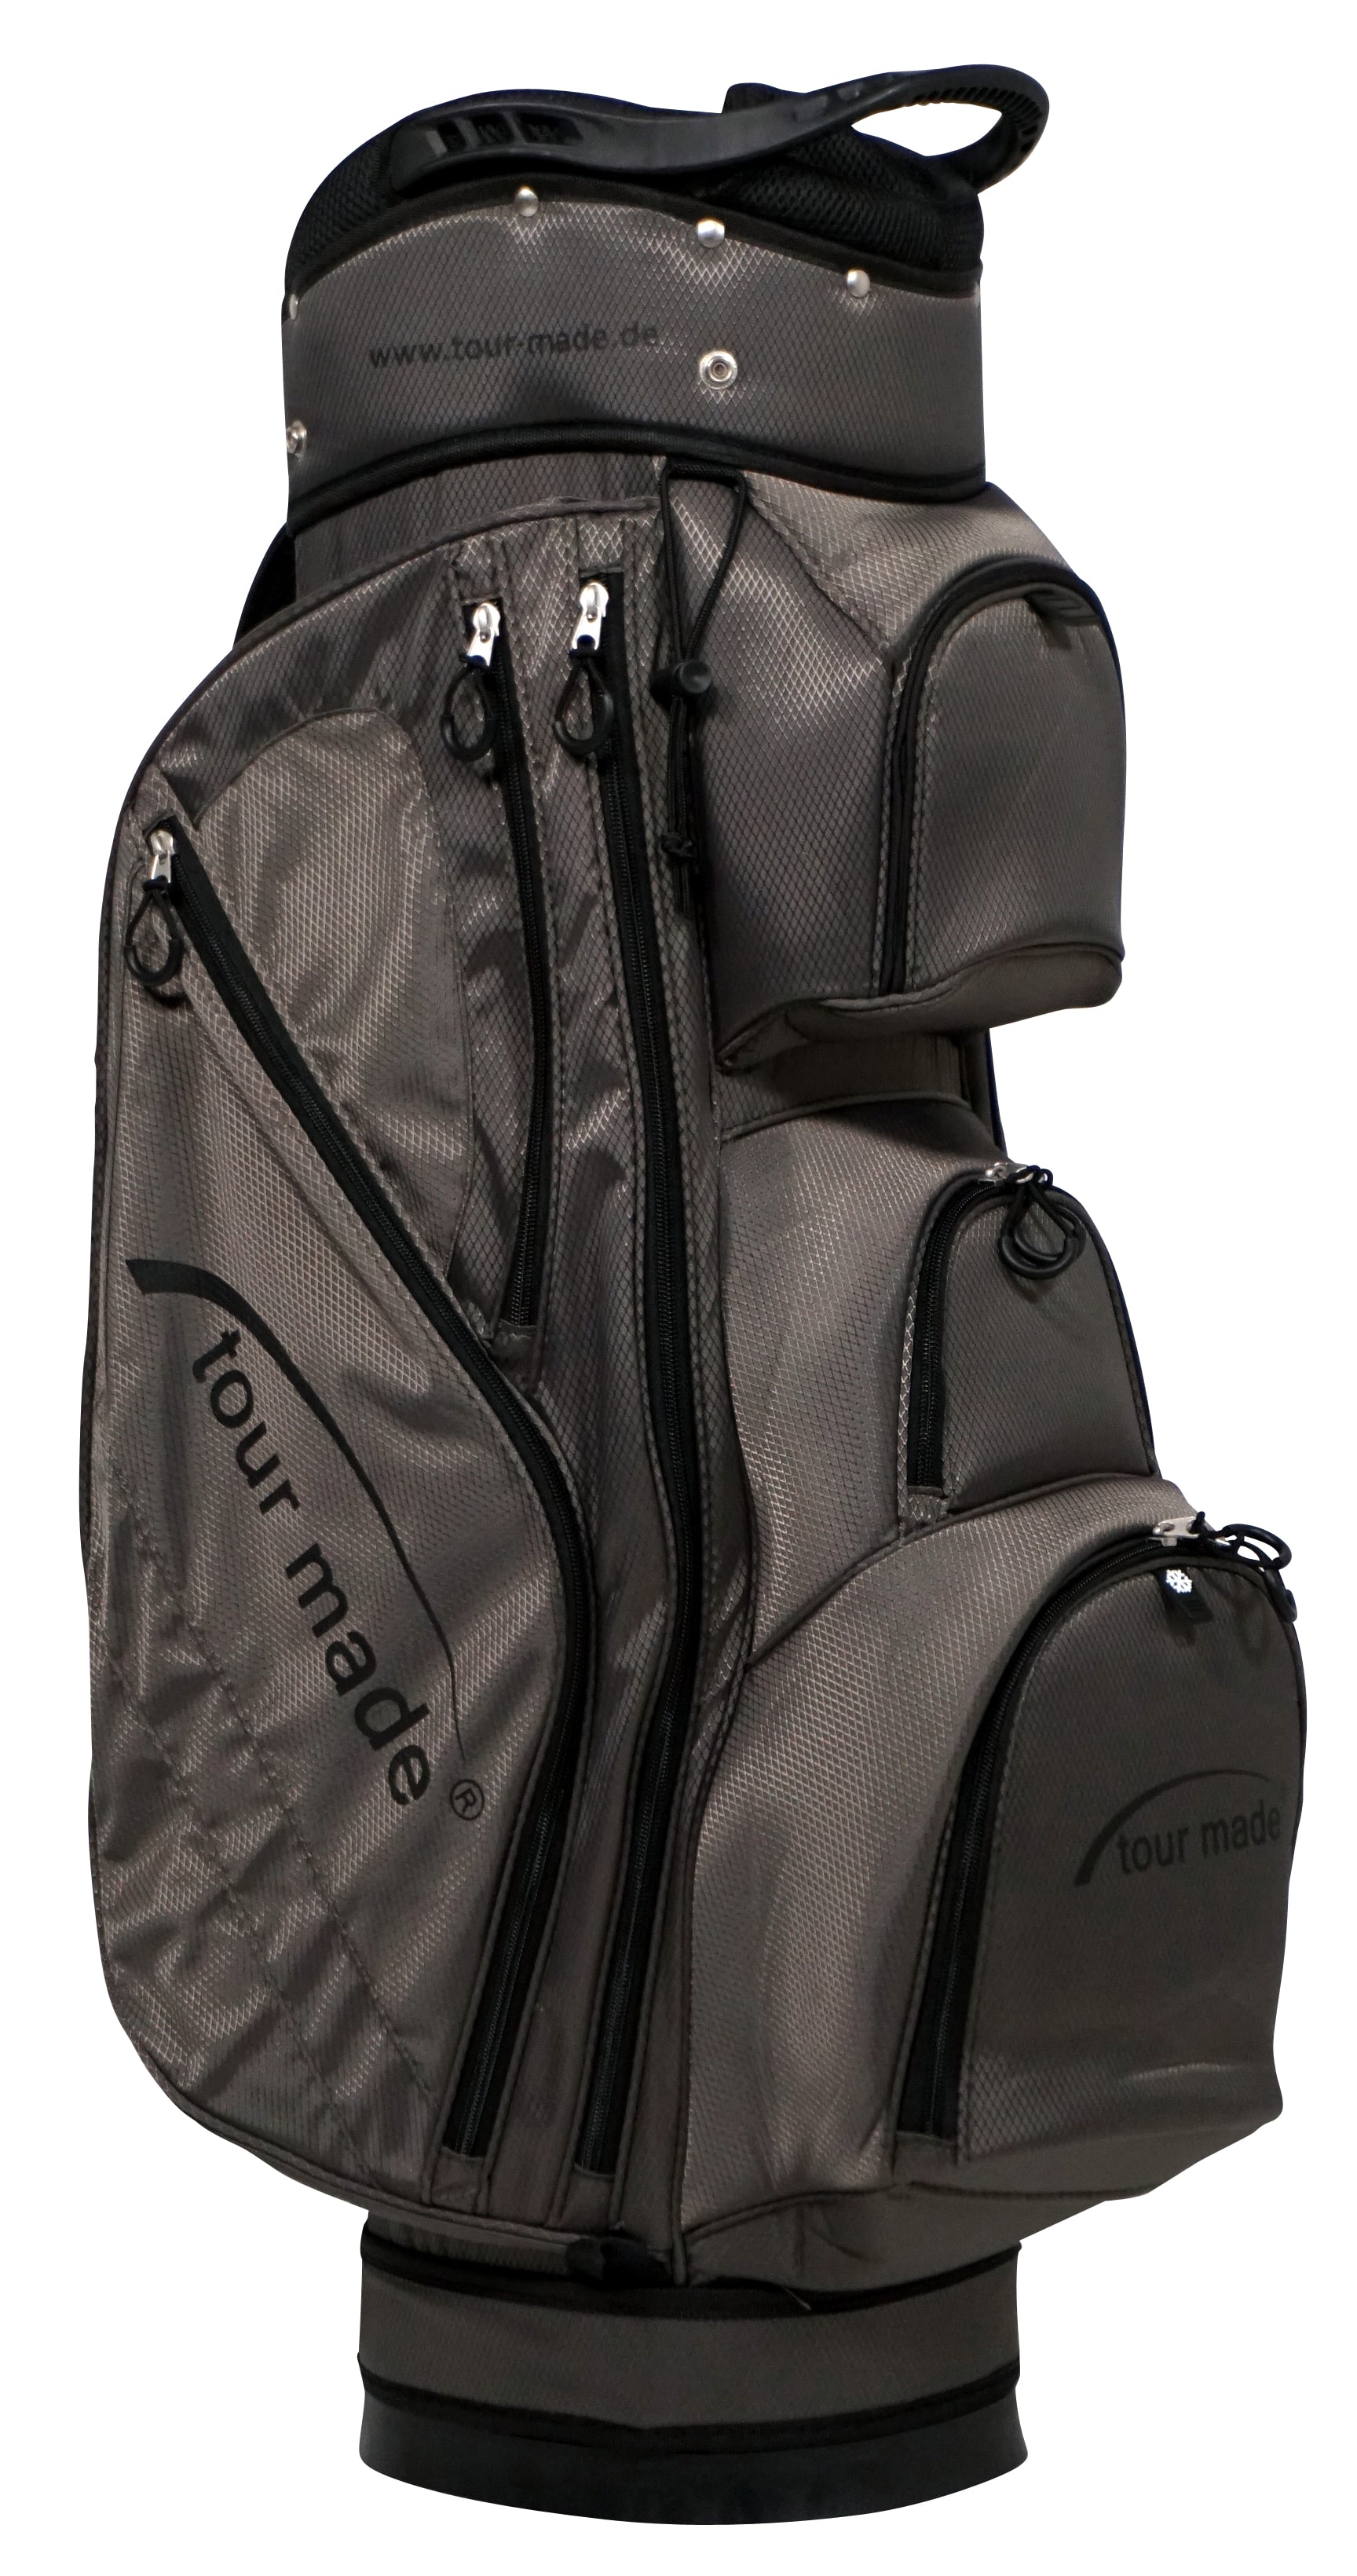 tour made ultralight golf bag